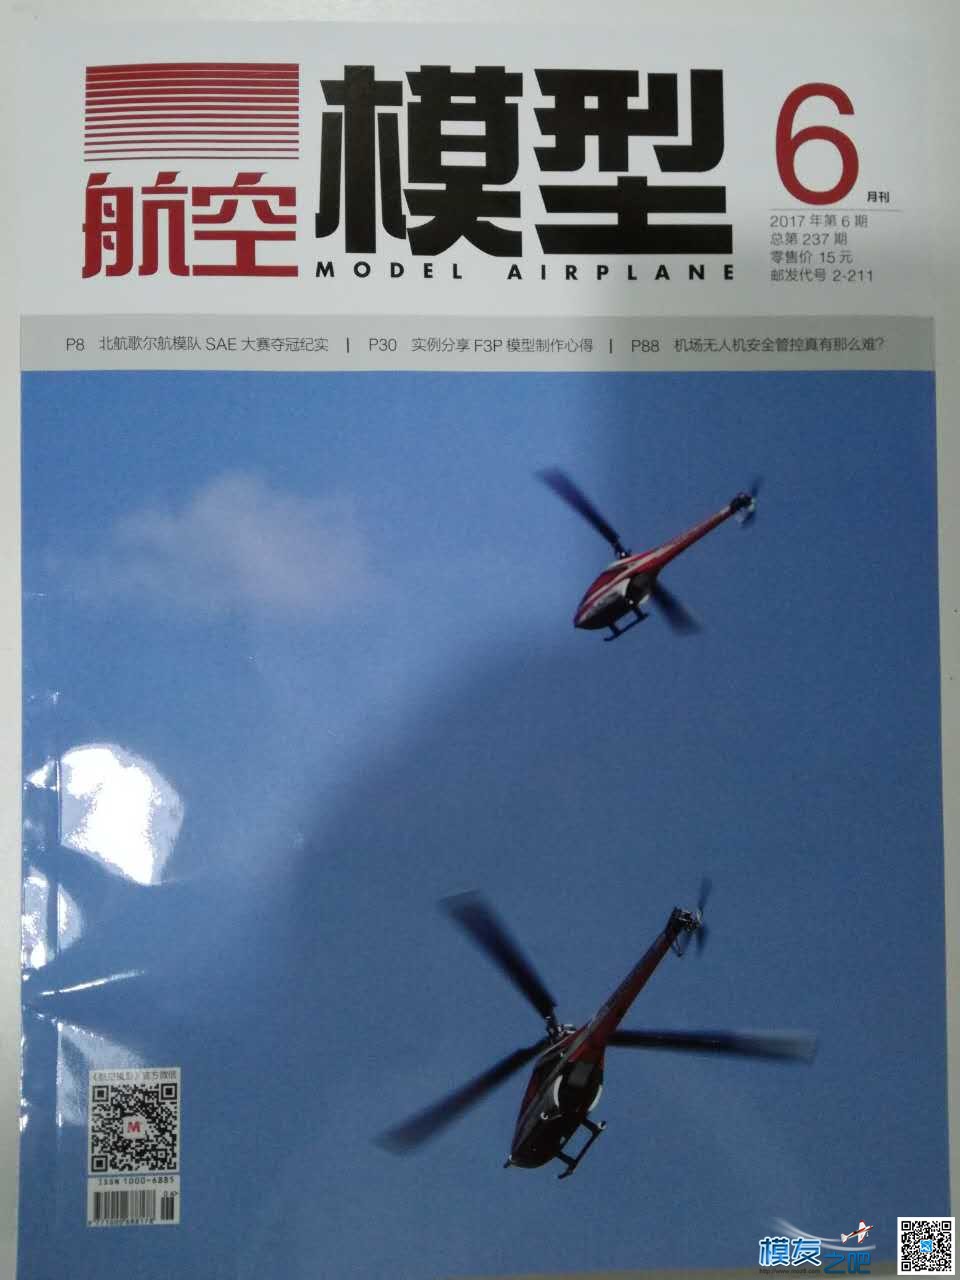 准备好面对无人机管理阶段了吗？ 杂志社,中国,模型,无人机,技术 作者:航模之友-飞星人 6868 